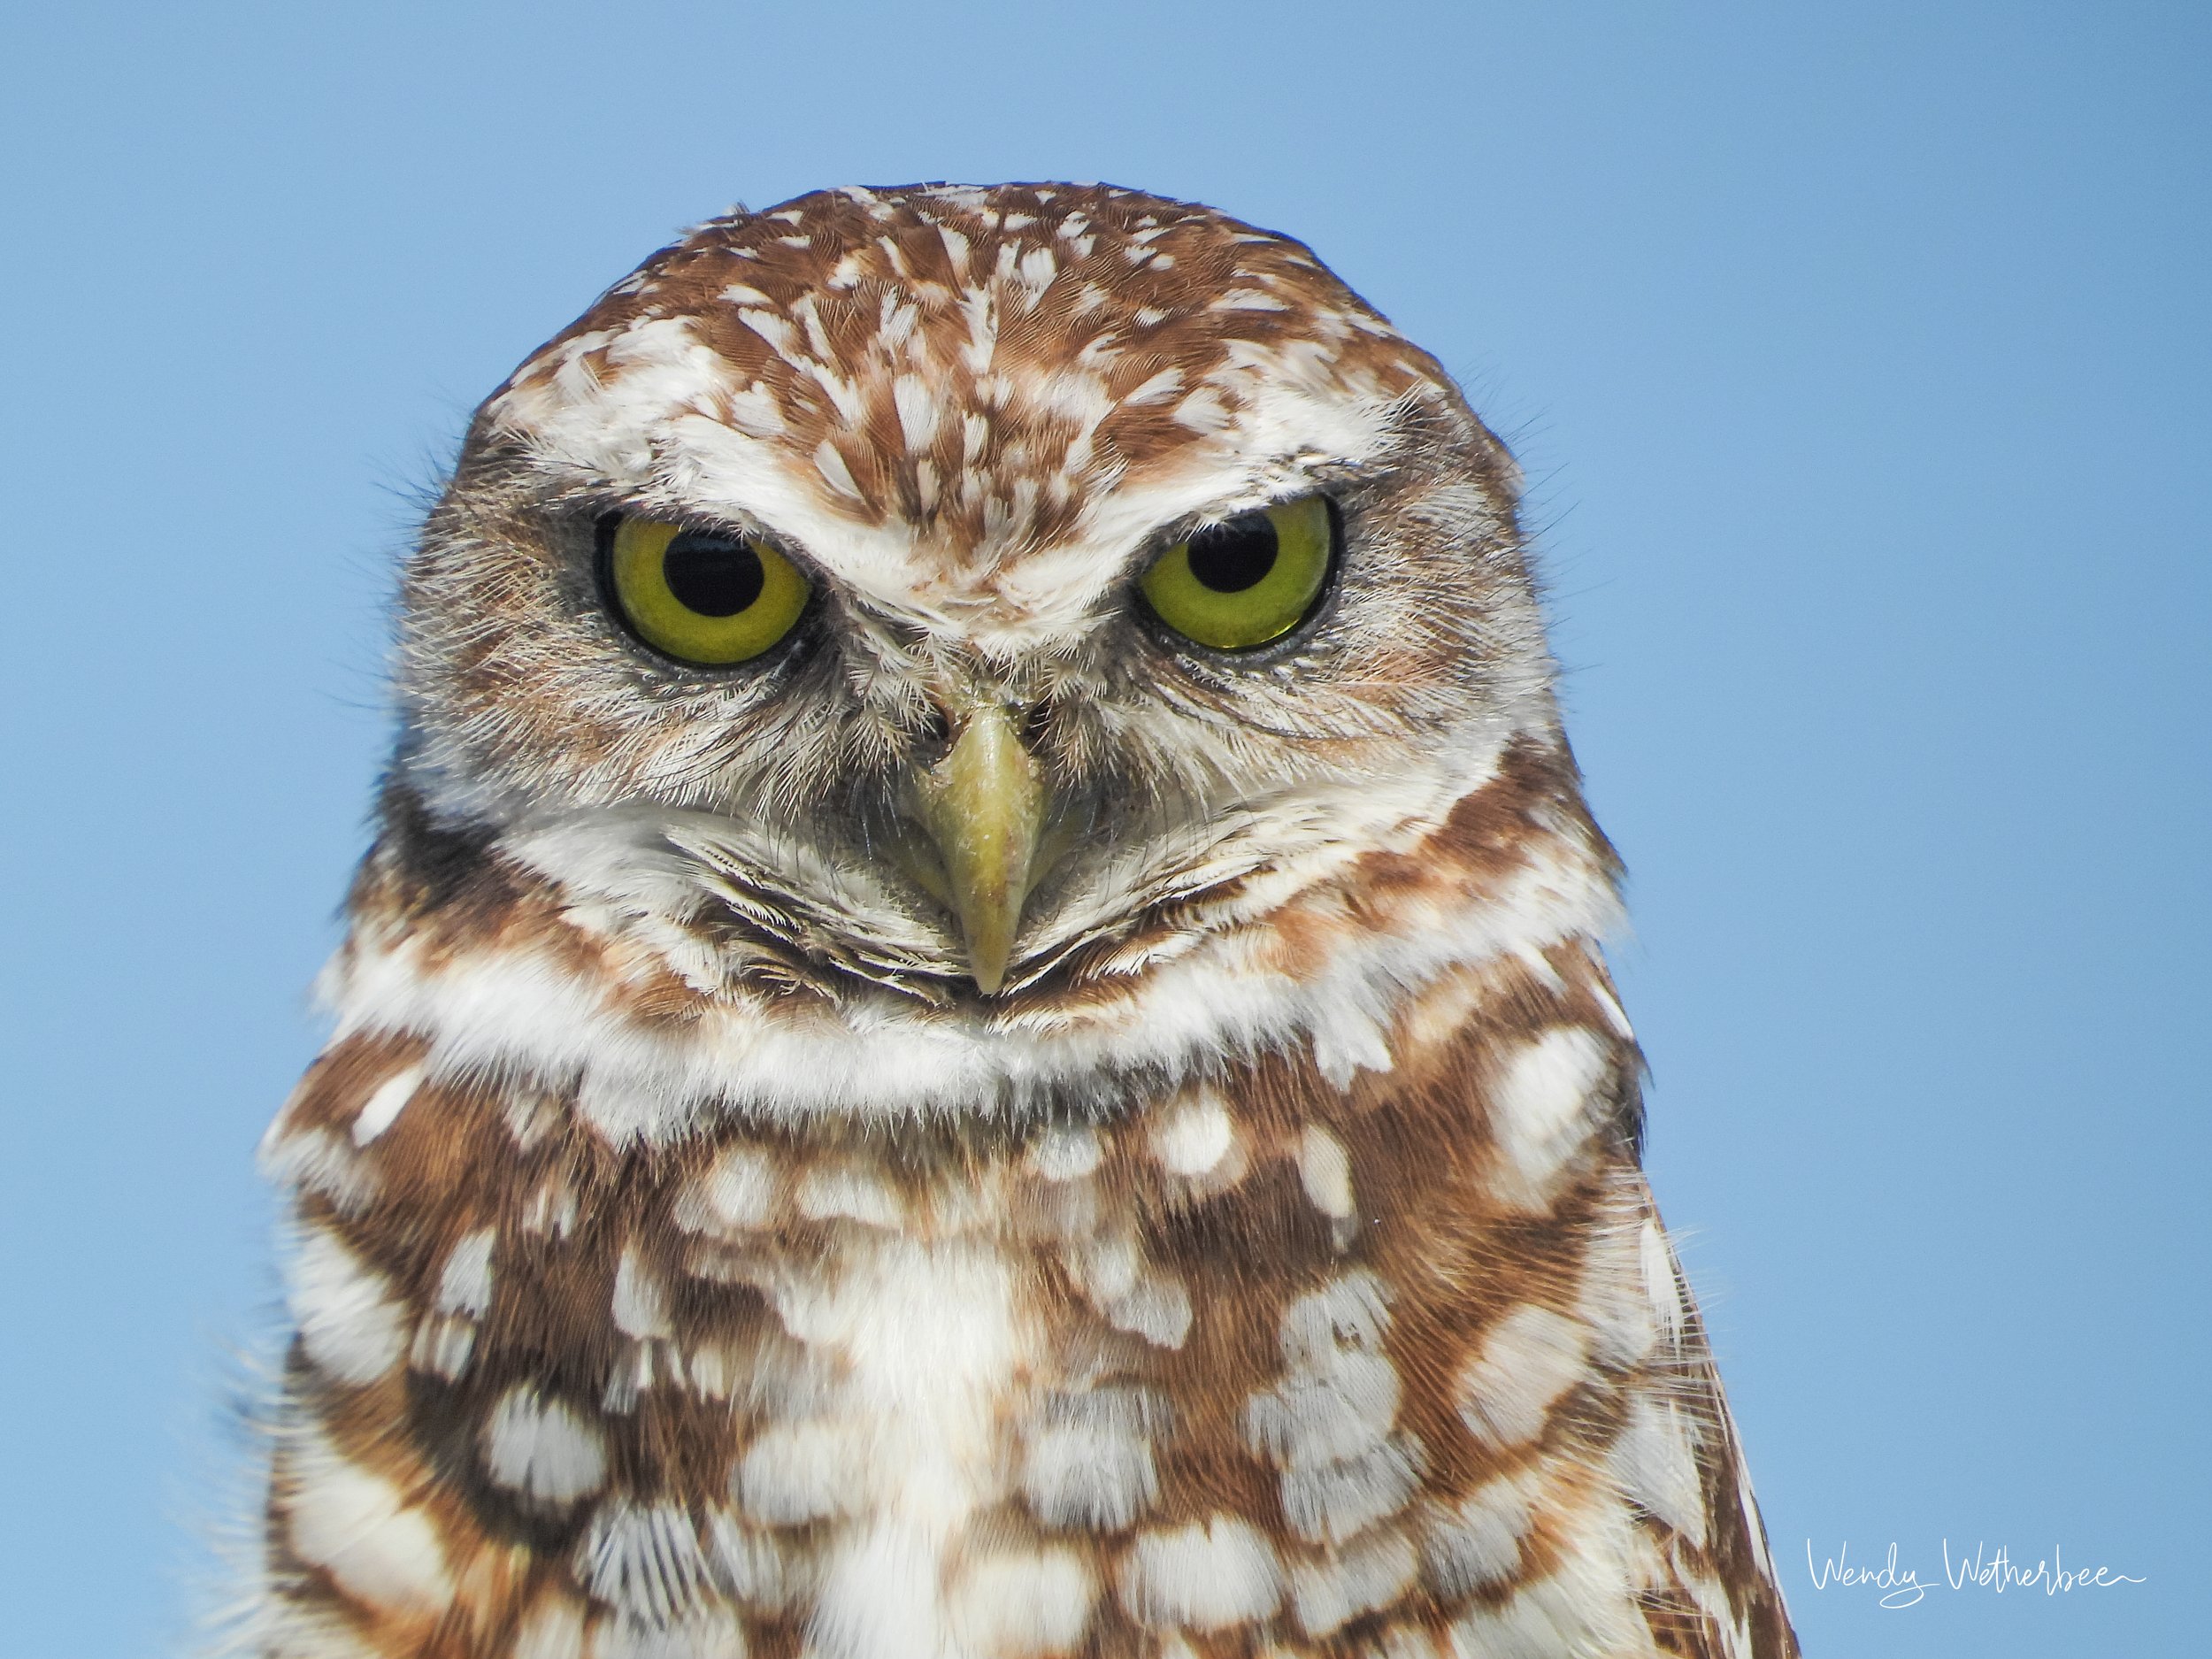 Alter Ego - Burrowing Owl ©2023 Wendy Wetherbee